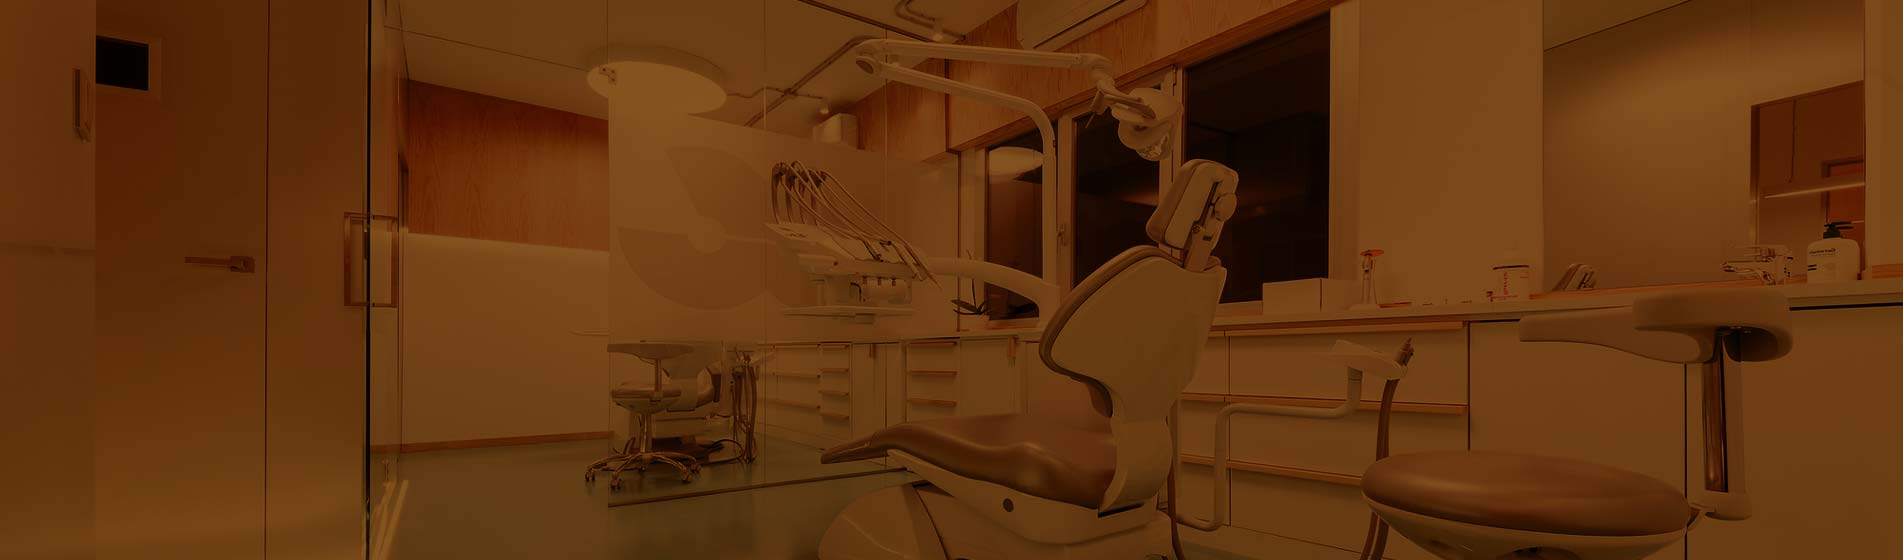 Clinica dental en mieres y la felguera. Dentista